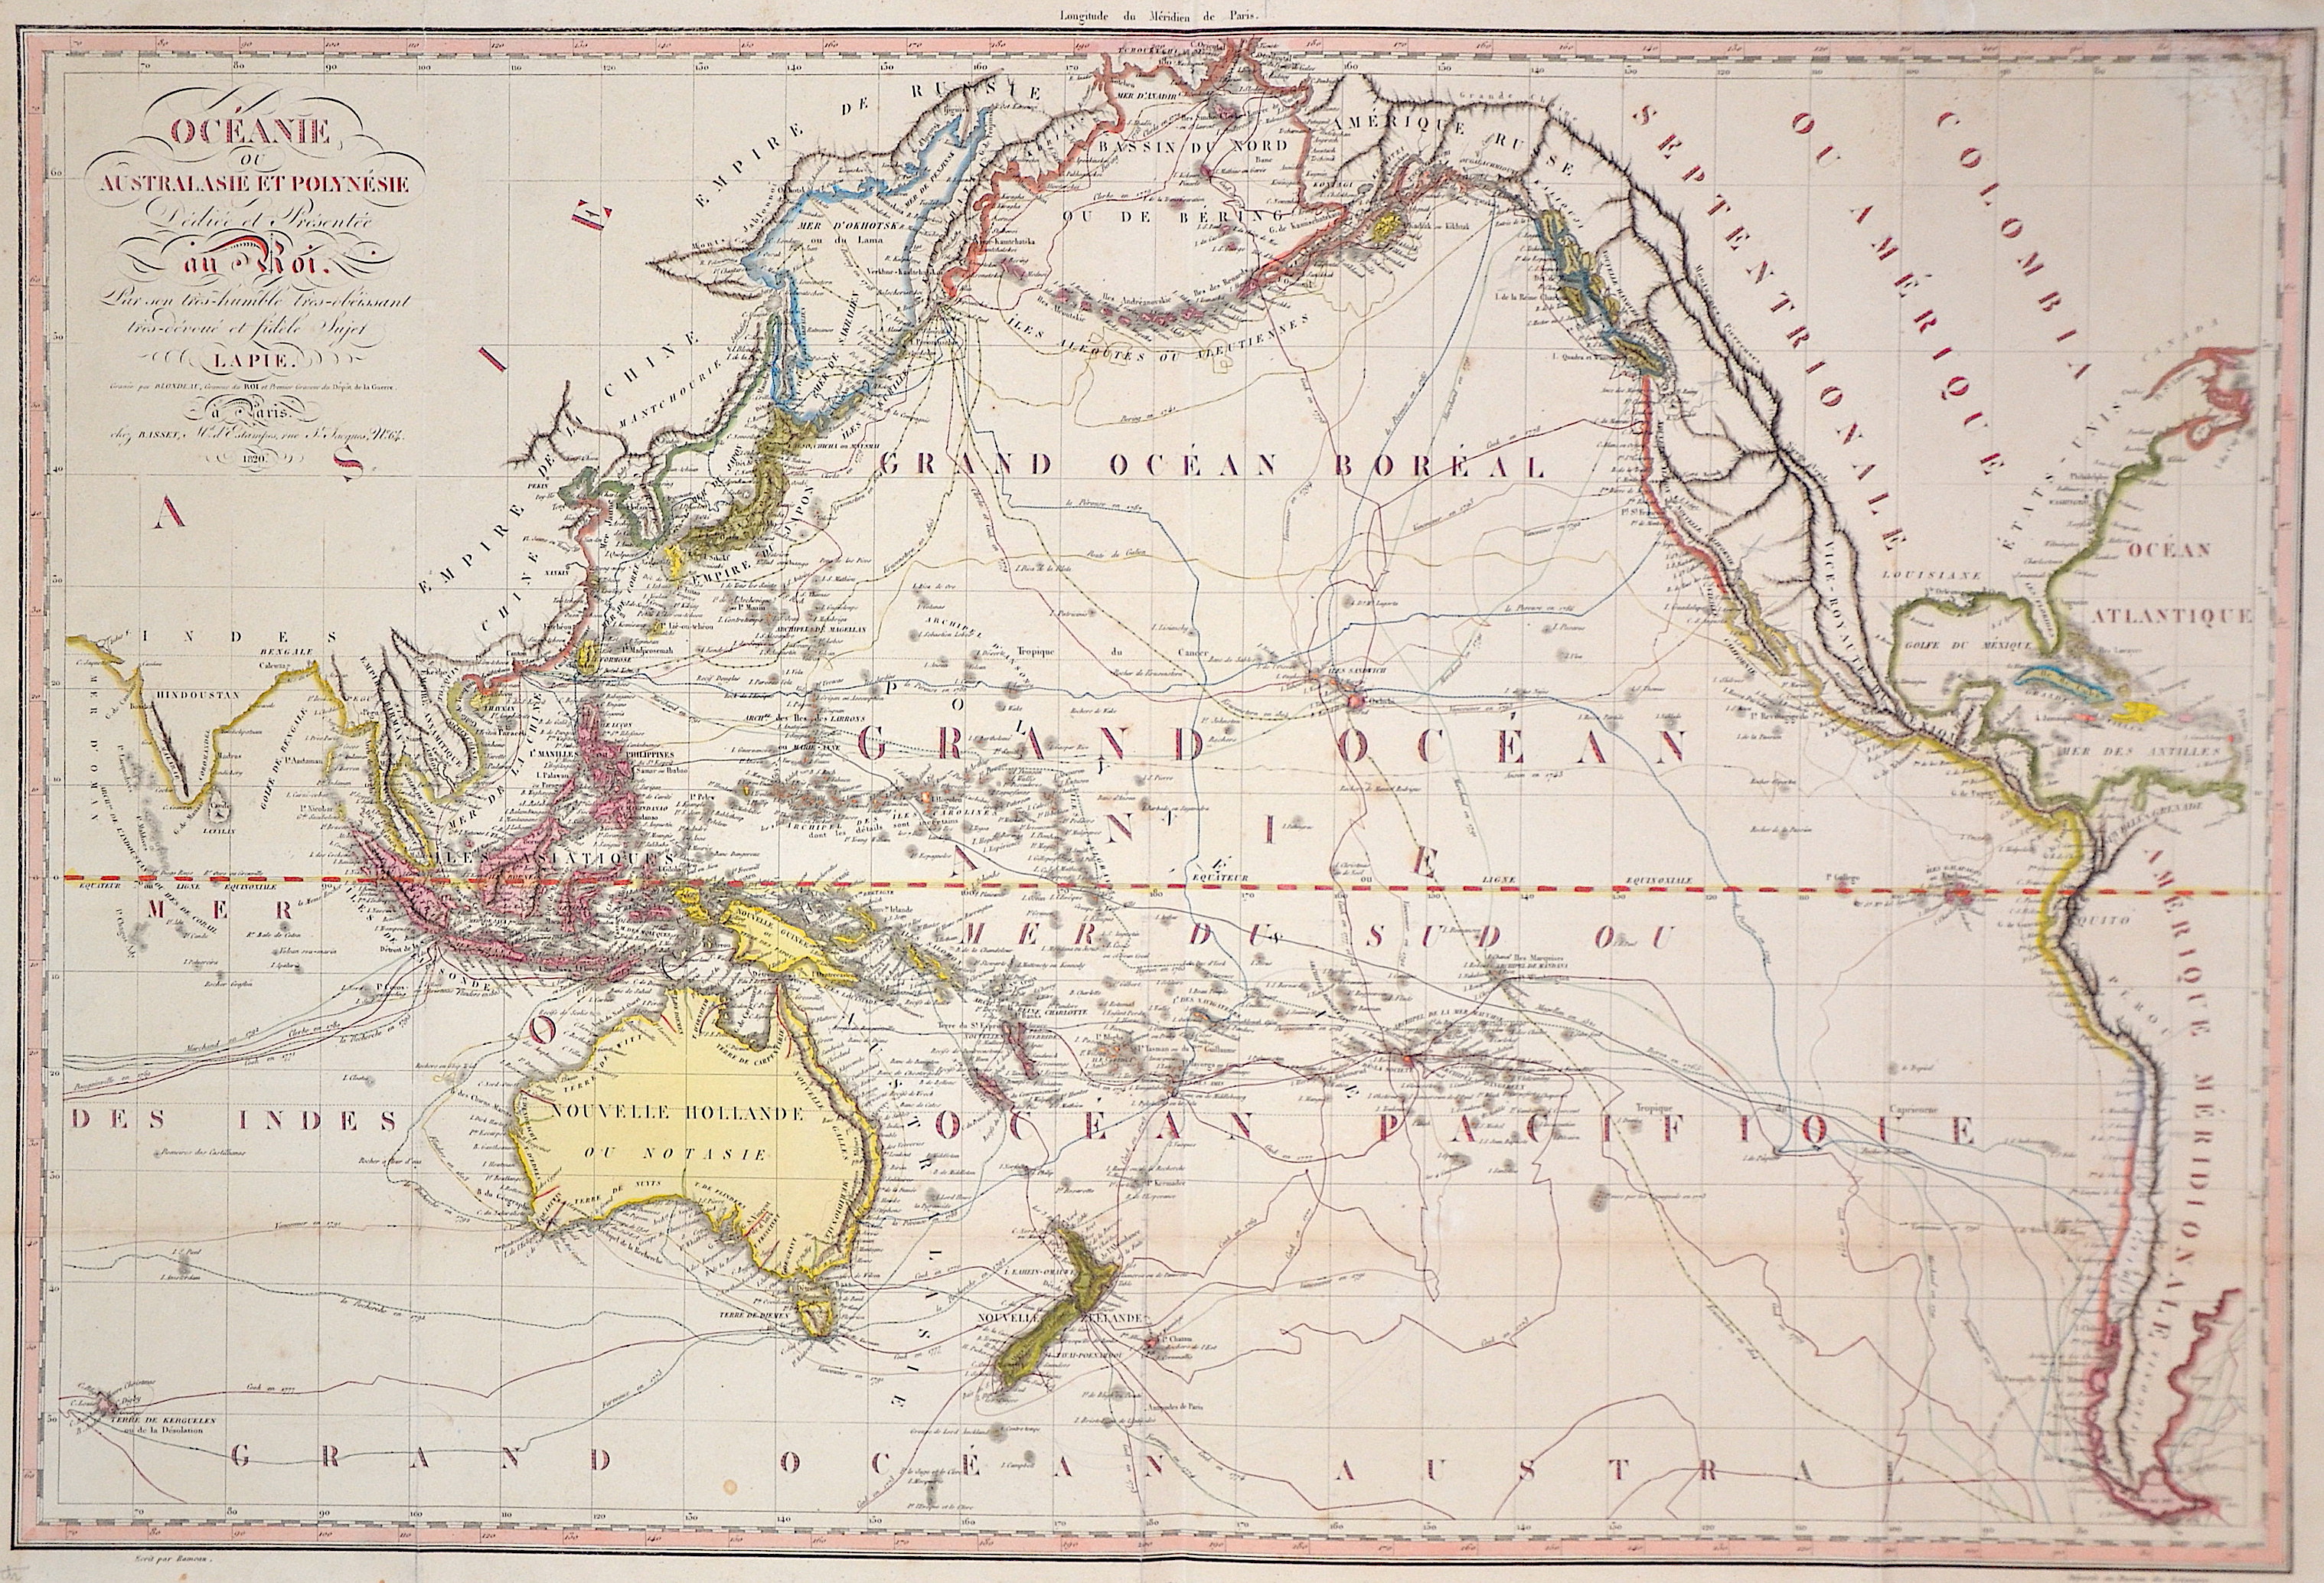 Lapie Alexandre Emile Oceanie ou Australasie et Polynésie